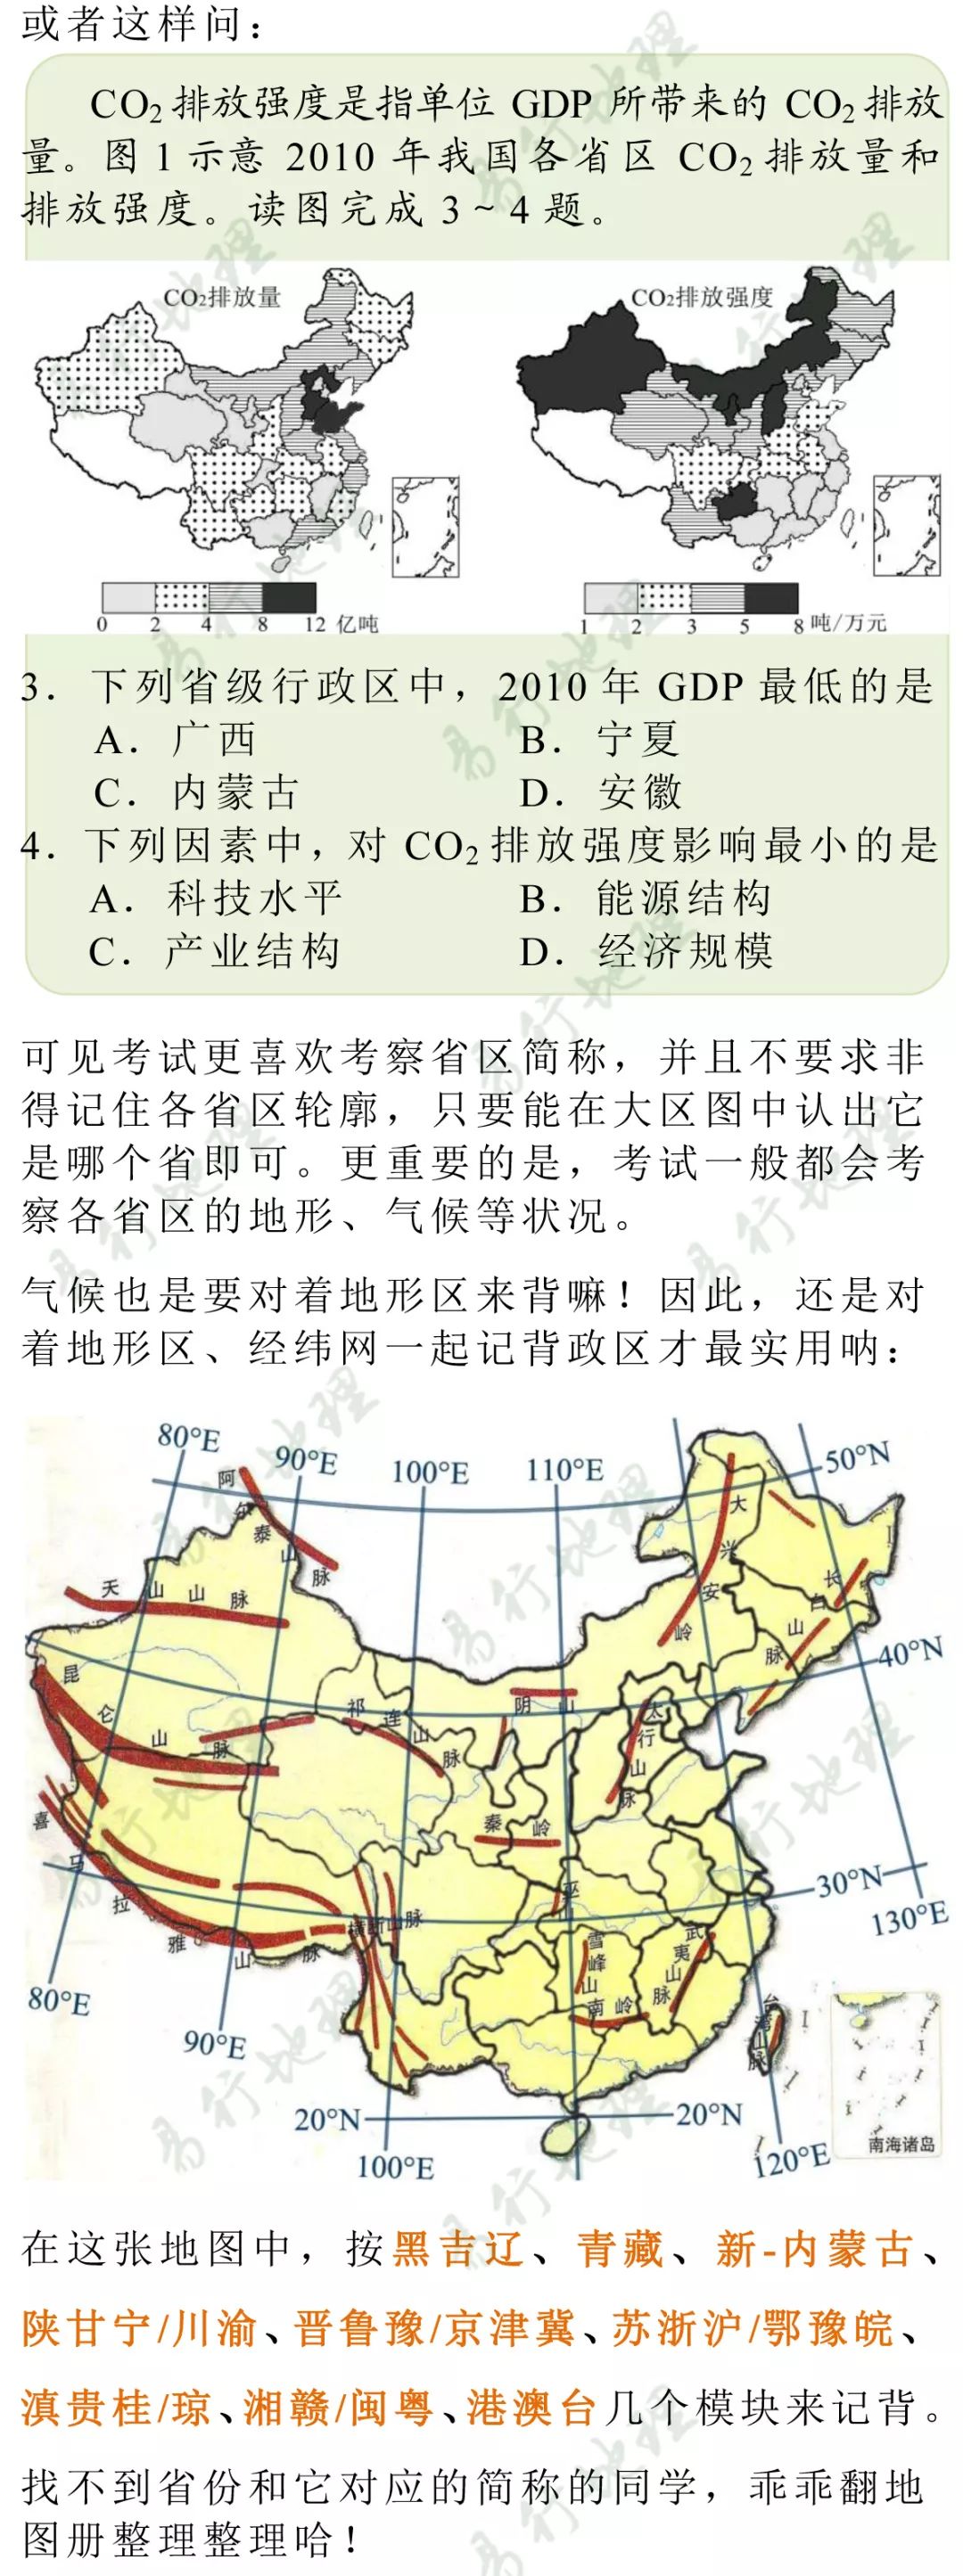 中国政区图手绘经纬网图片